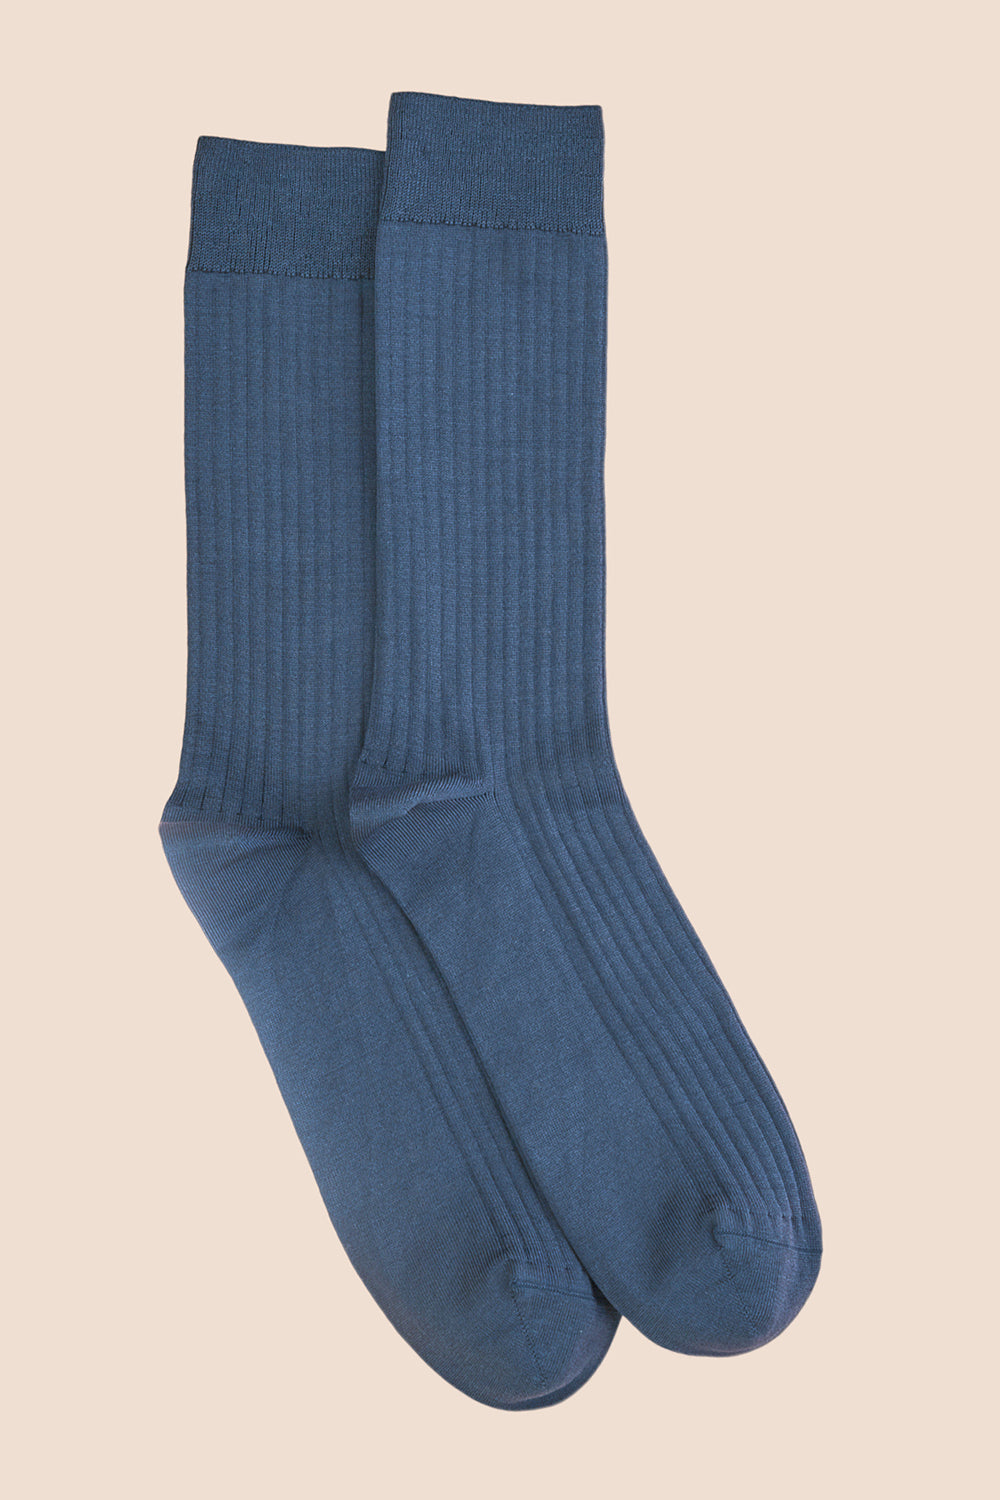 Pétrone chaussettes côtelées mi-mollet en fil d'Ecosse italien bleu céruléen hommes